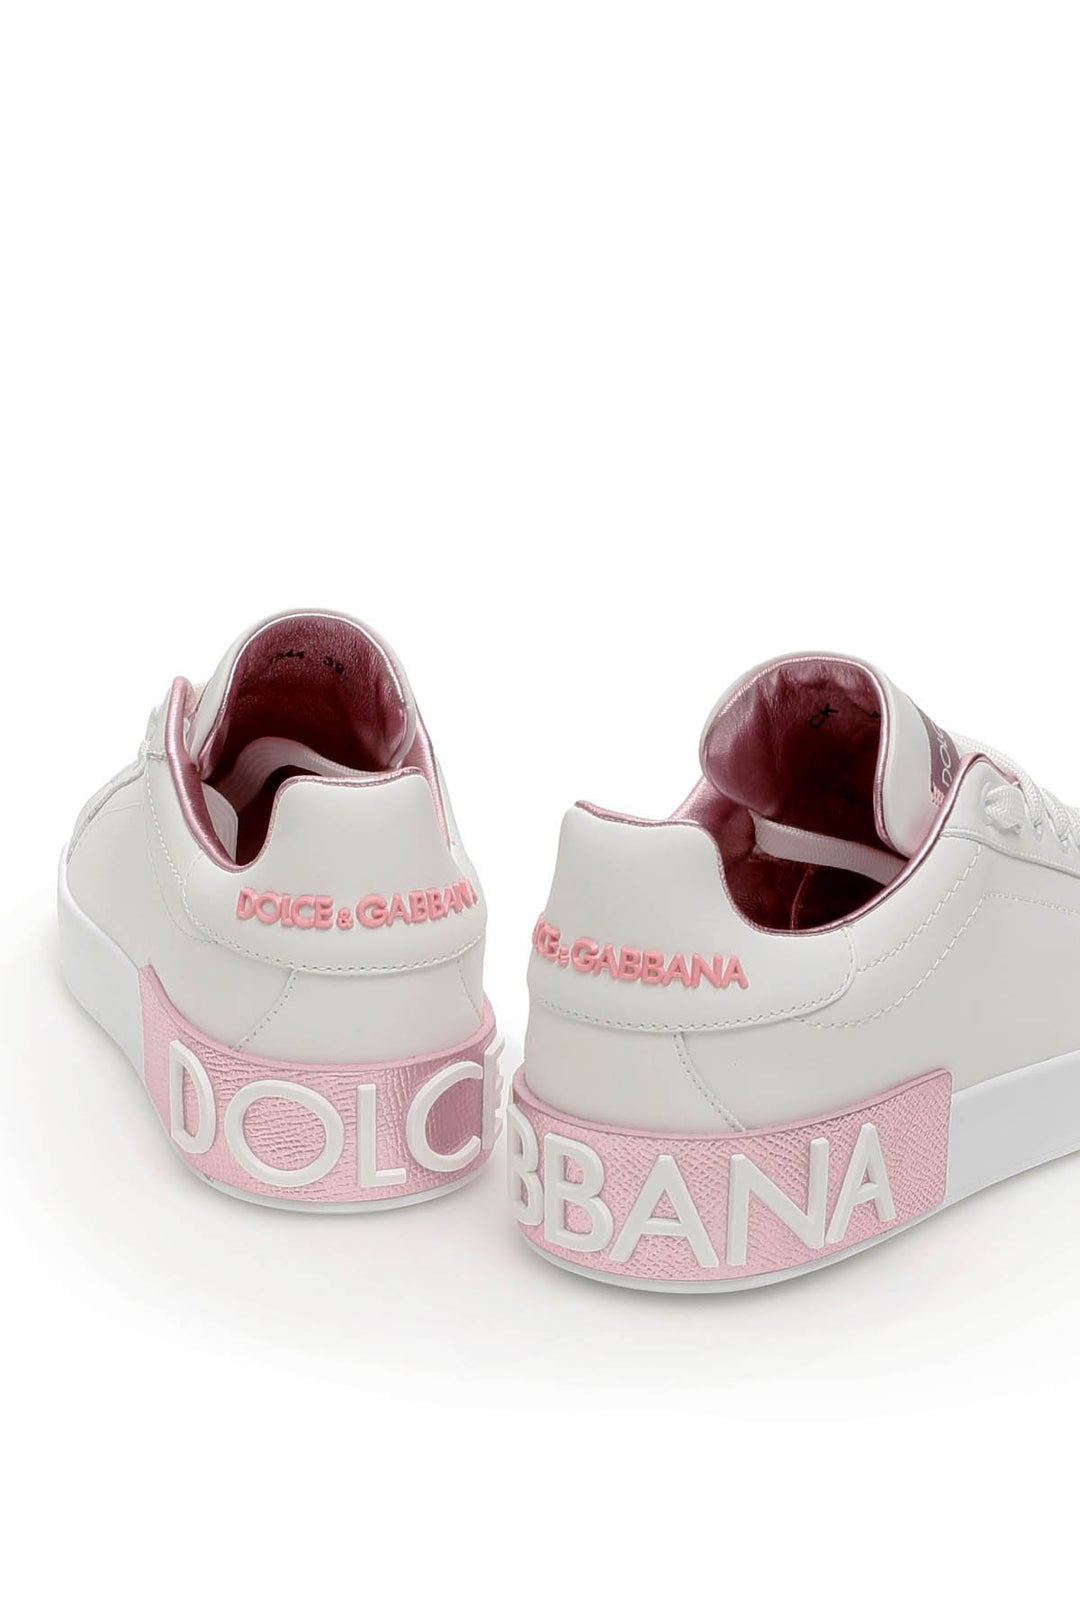 Sneaker Classica Portofino - Dolce & Gabbana - Donna